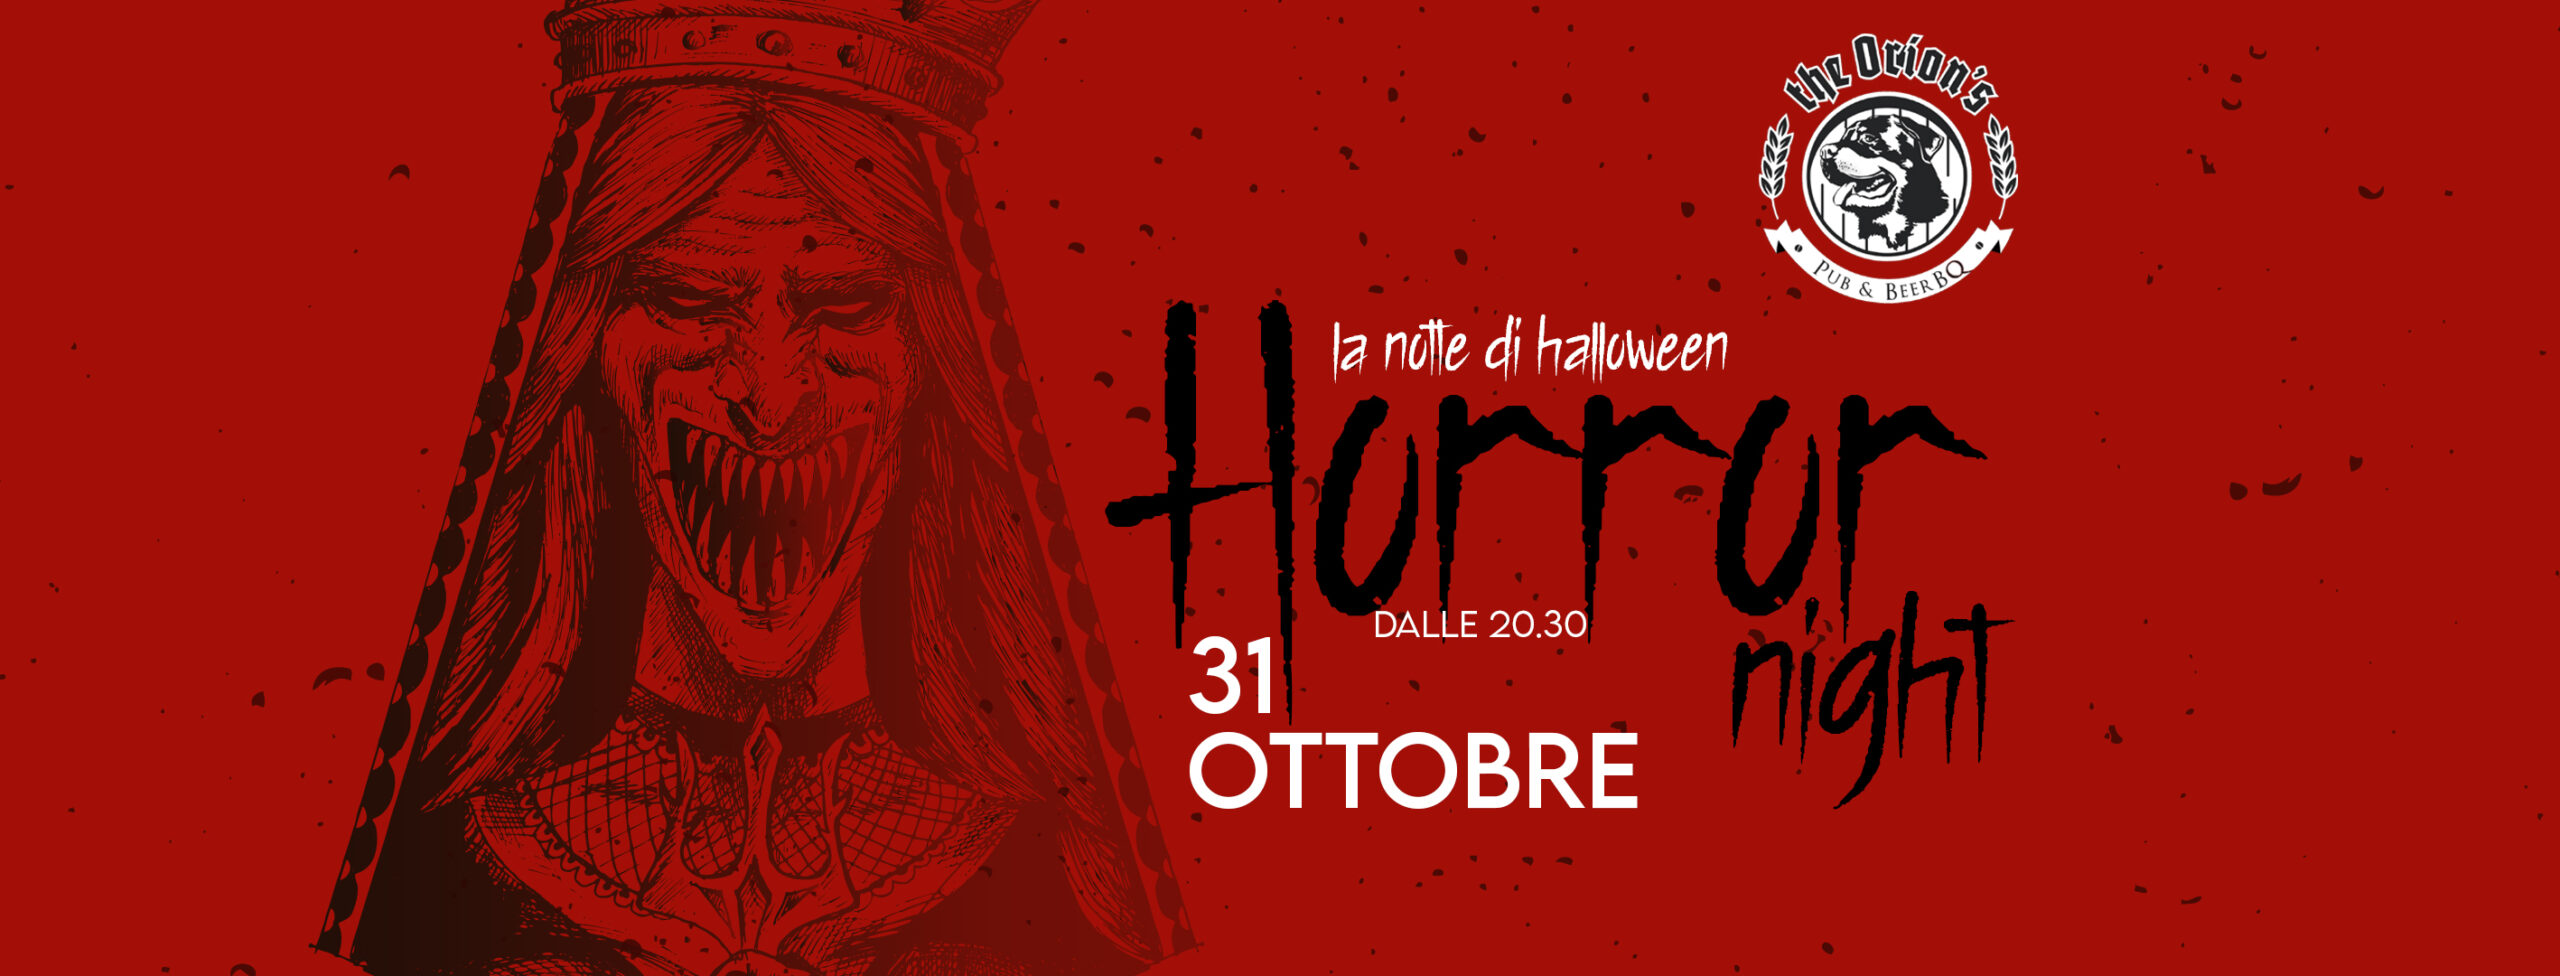 Horror Night - La notte di Halloween al The Orion’s - Pub & Beer BQ - Sevegliano - Udine